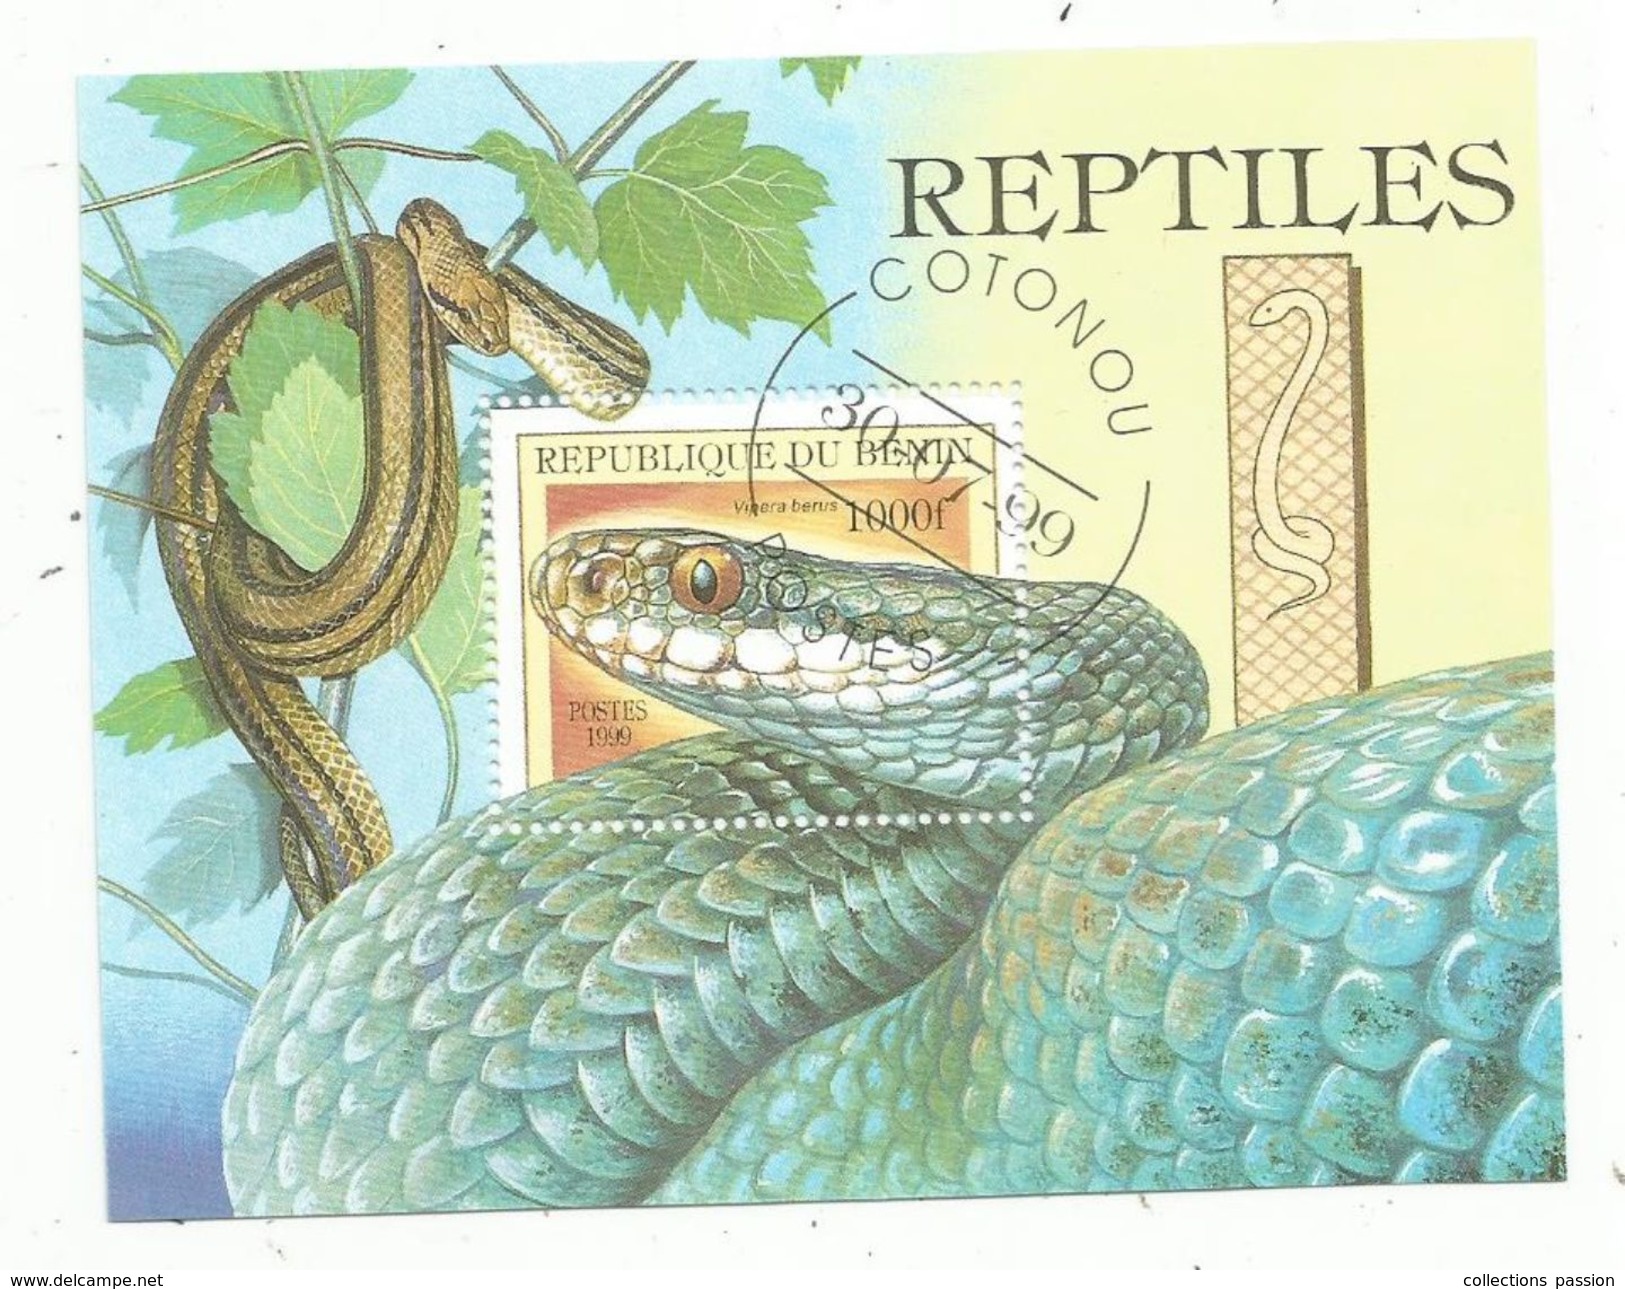 Timbre , REPTILES , Serpents , REPUBLIQUE DU BENIN , 1000f , Cotonou , 1999 , Vipera Berus - Snakes